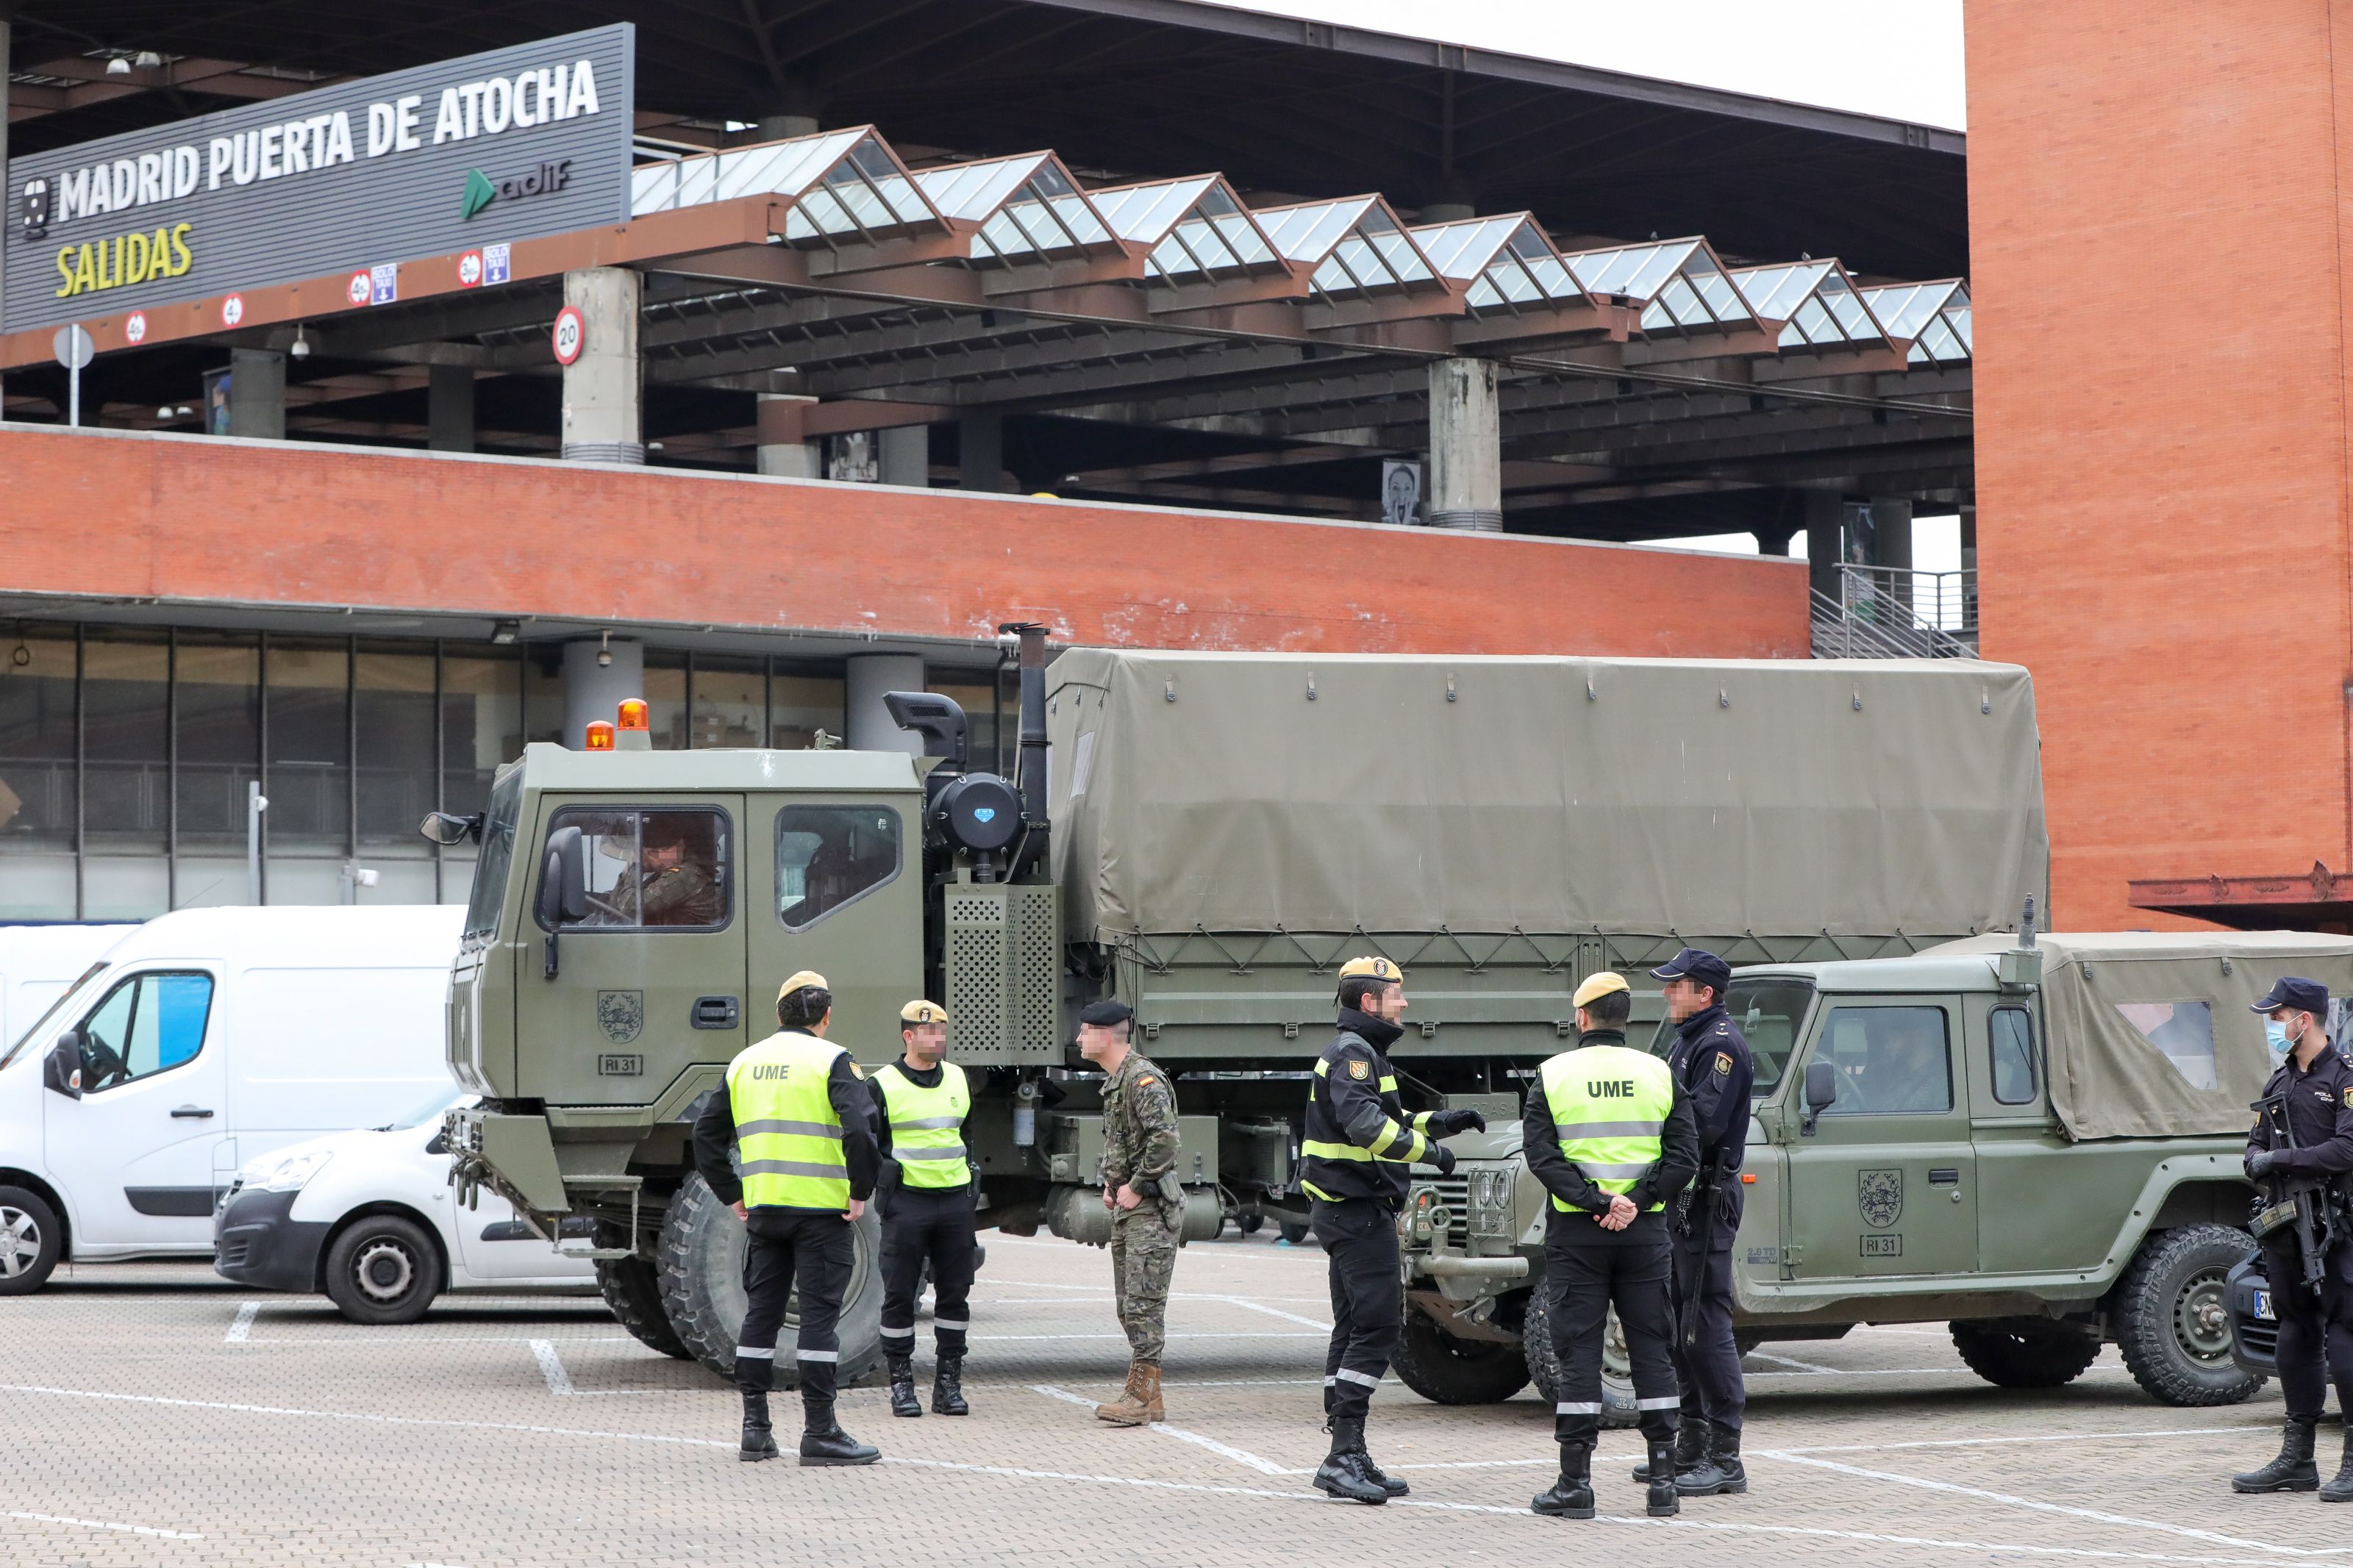 La Comunidad de Madrid pide al Gobierno apoyo militar "urgente"